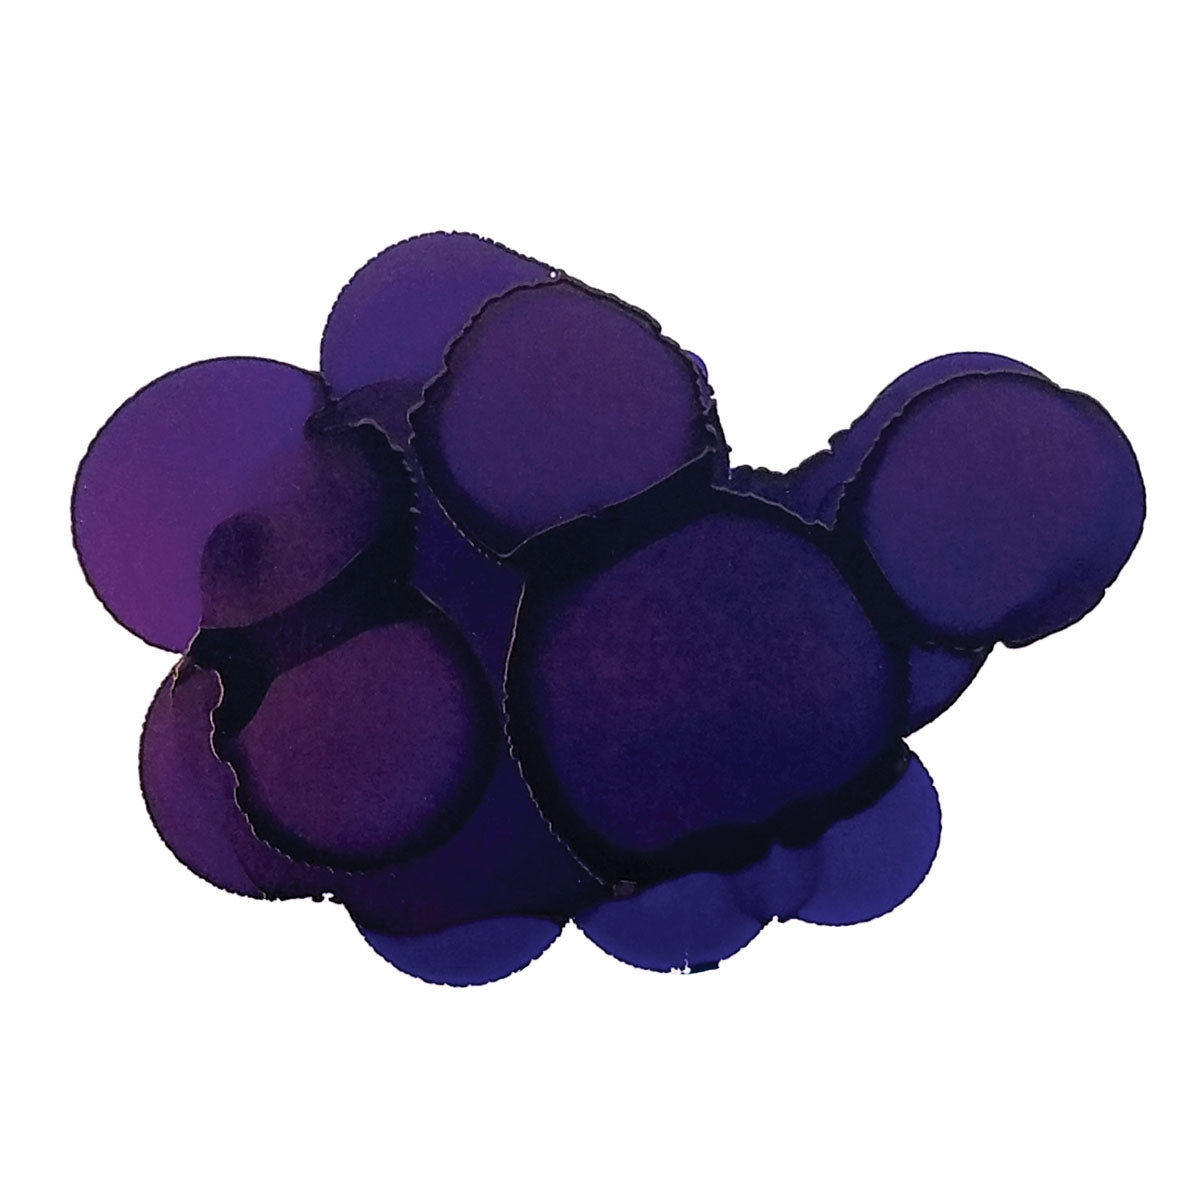 Jacquard - Pinata Alkoholtinten 1-2oz 15ml - Blau Violett 016